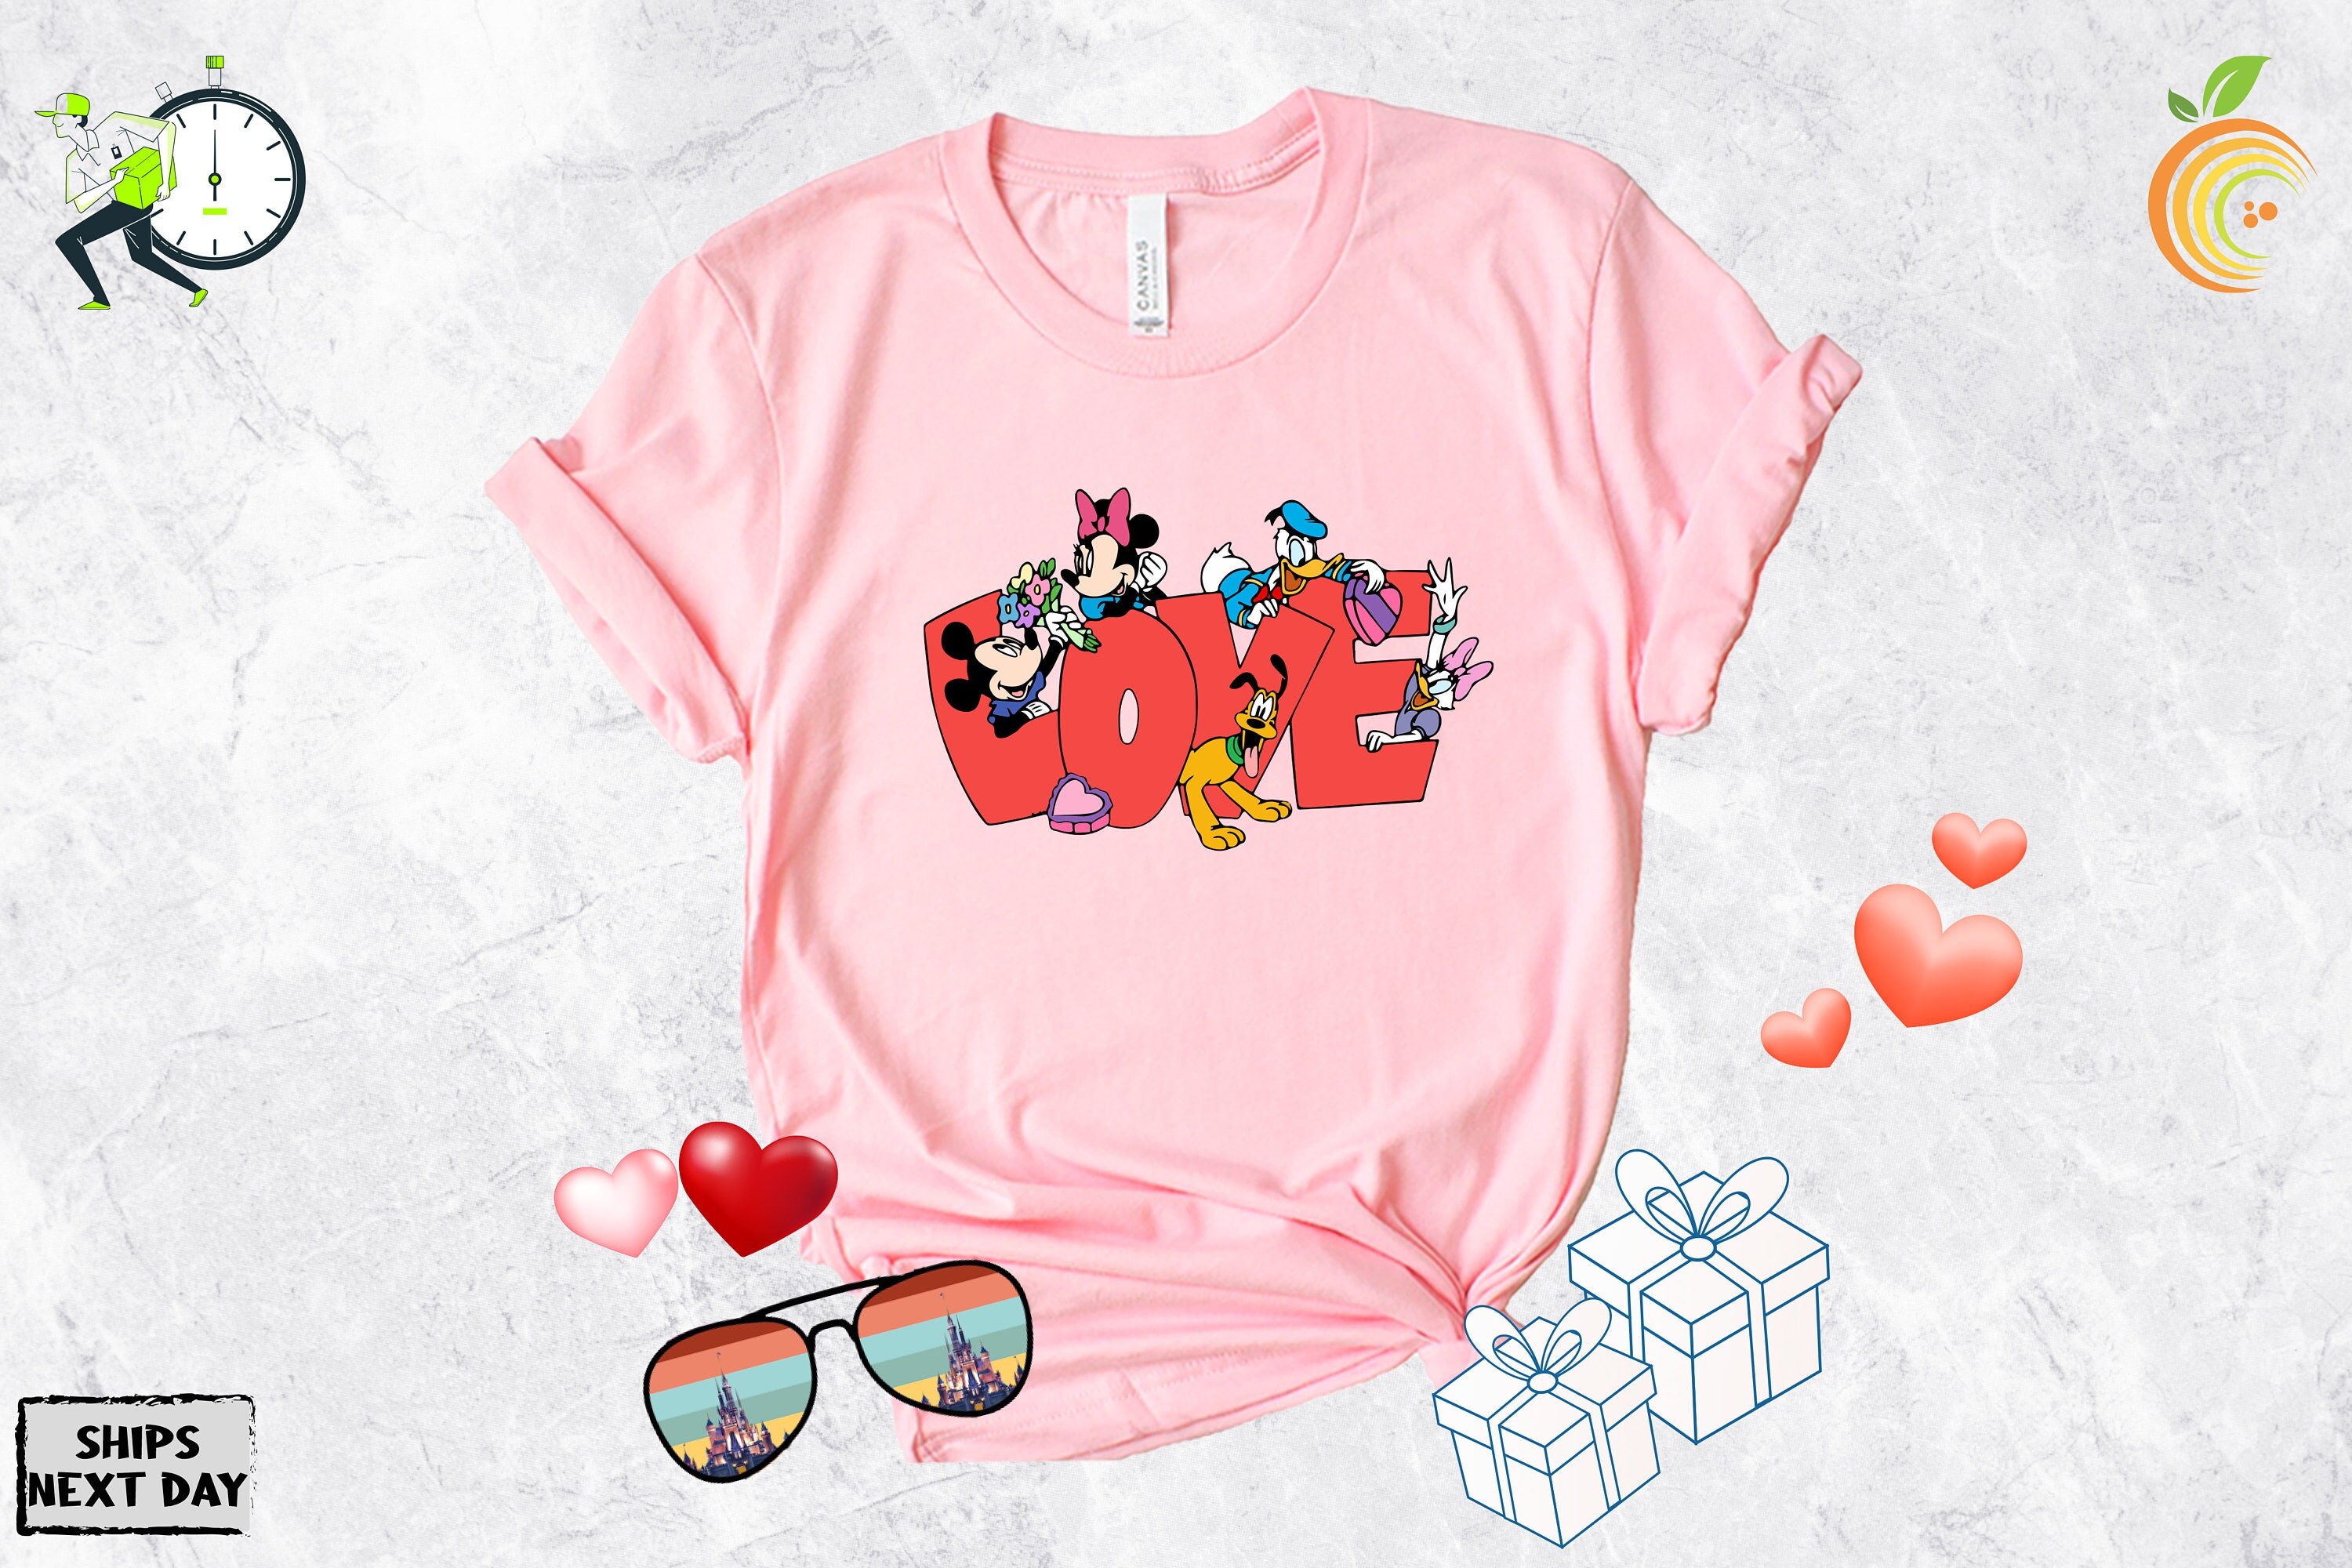 Discover Camiseta Disney Día de San Valentín Lindo Divertido Vintage para Hombre Mujer